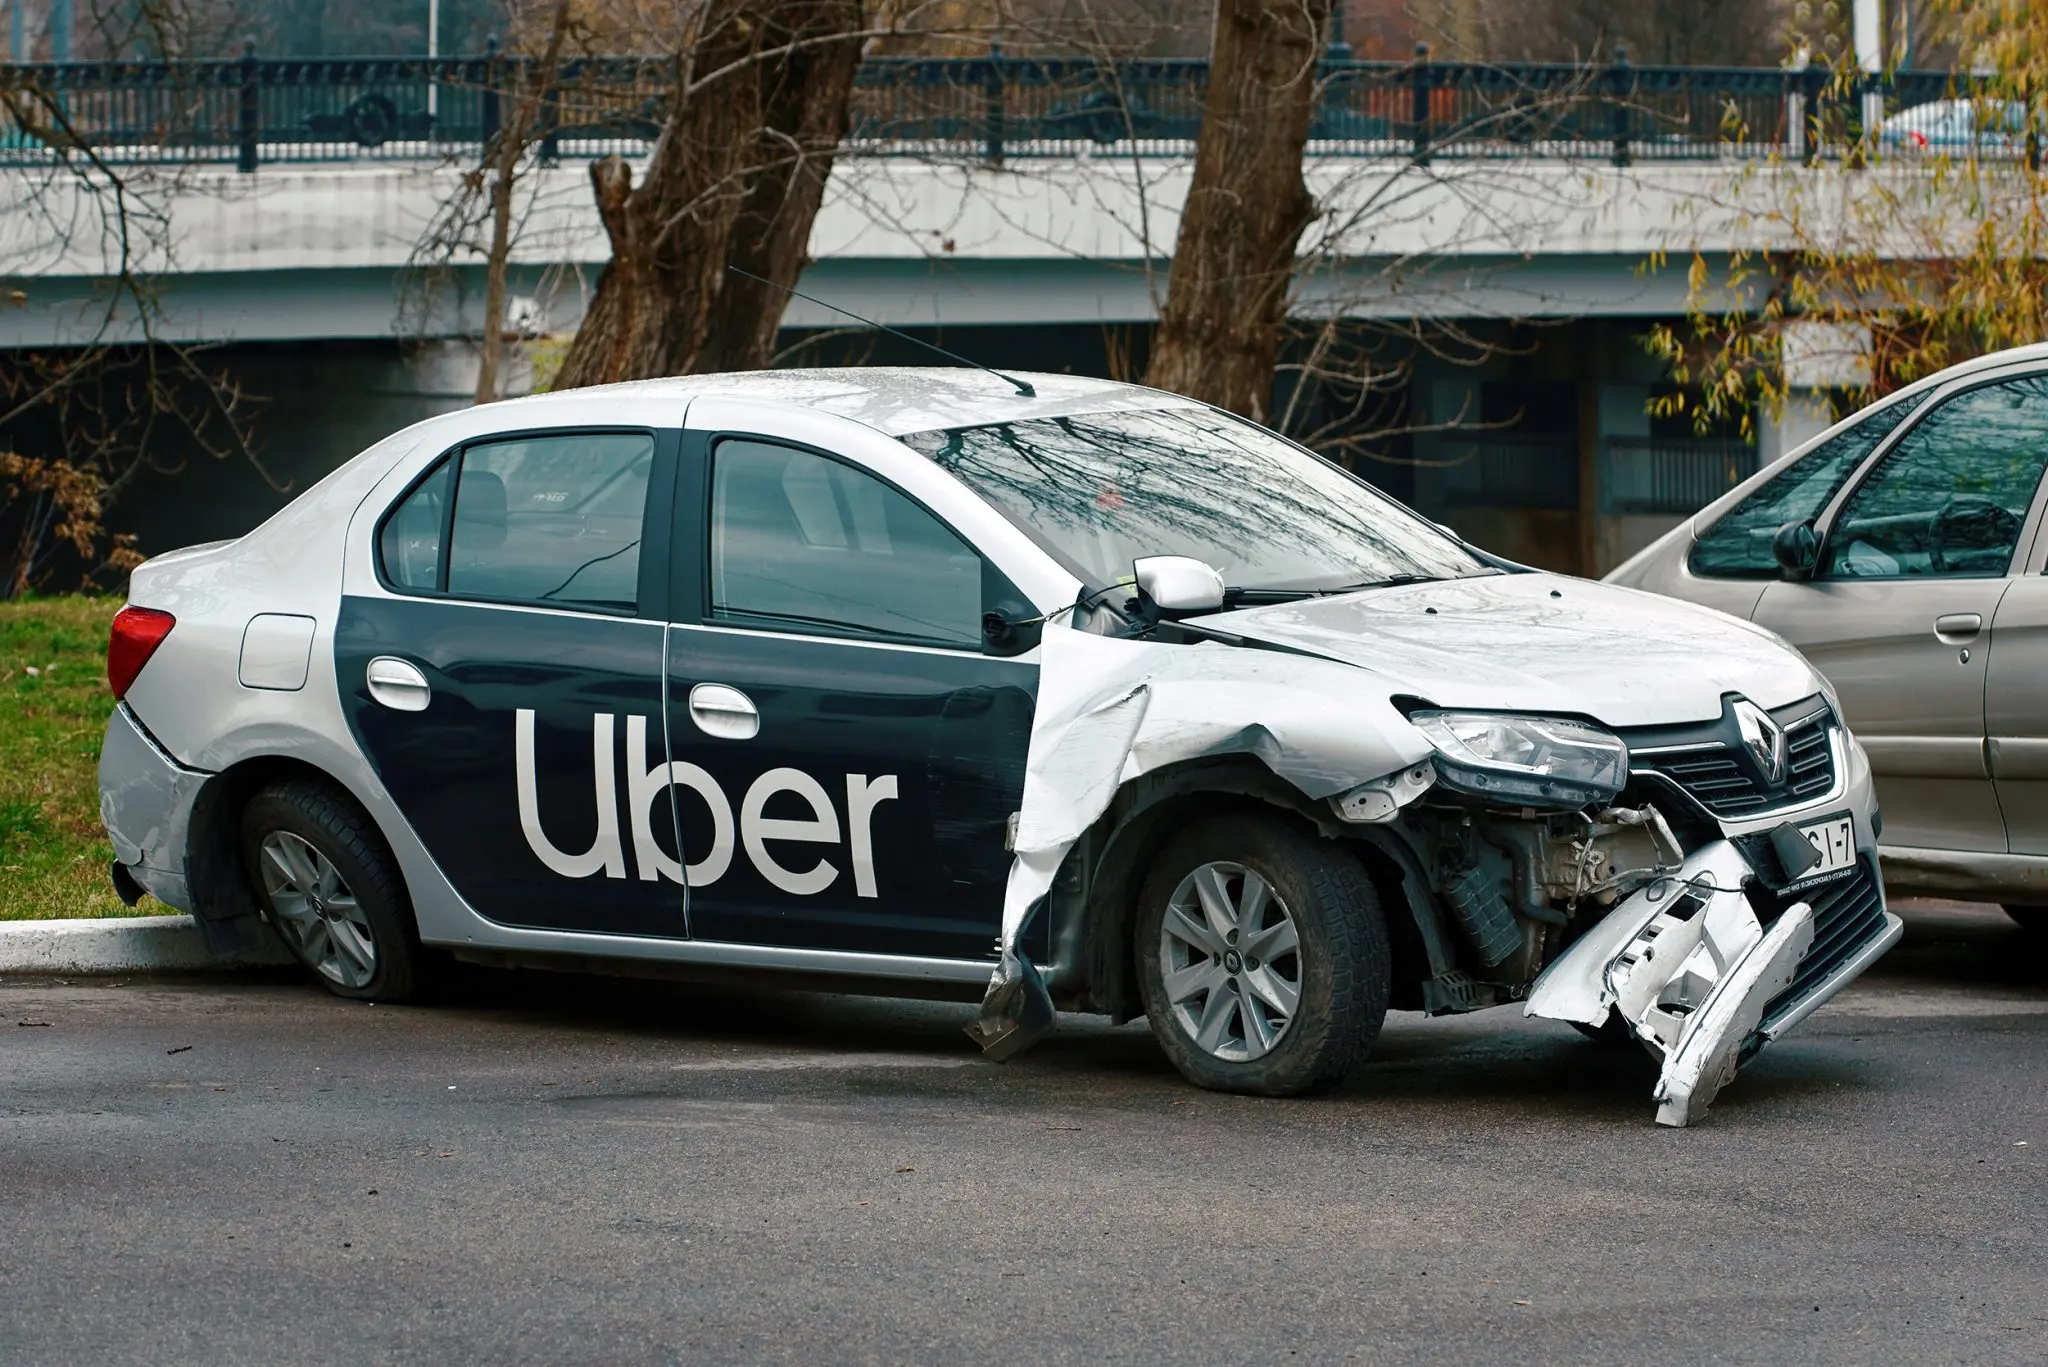 accidente uber y taxi paseo - Qué hacer en caso de accidente en Uber